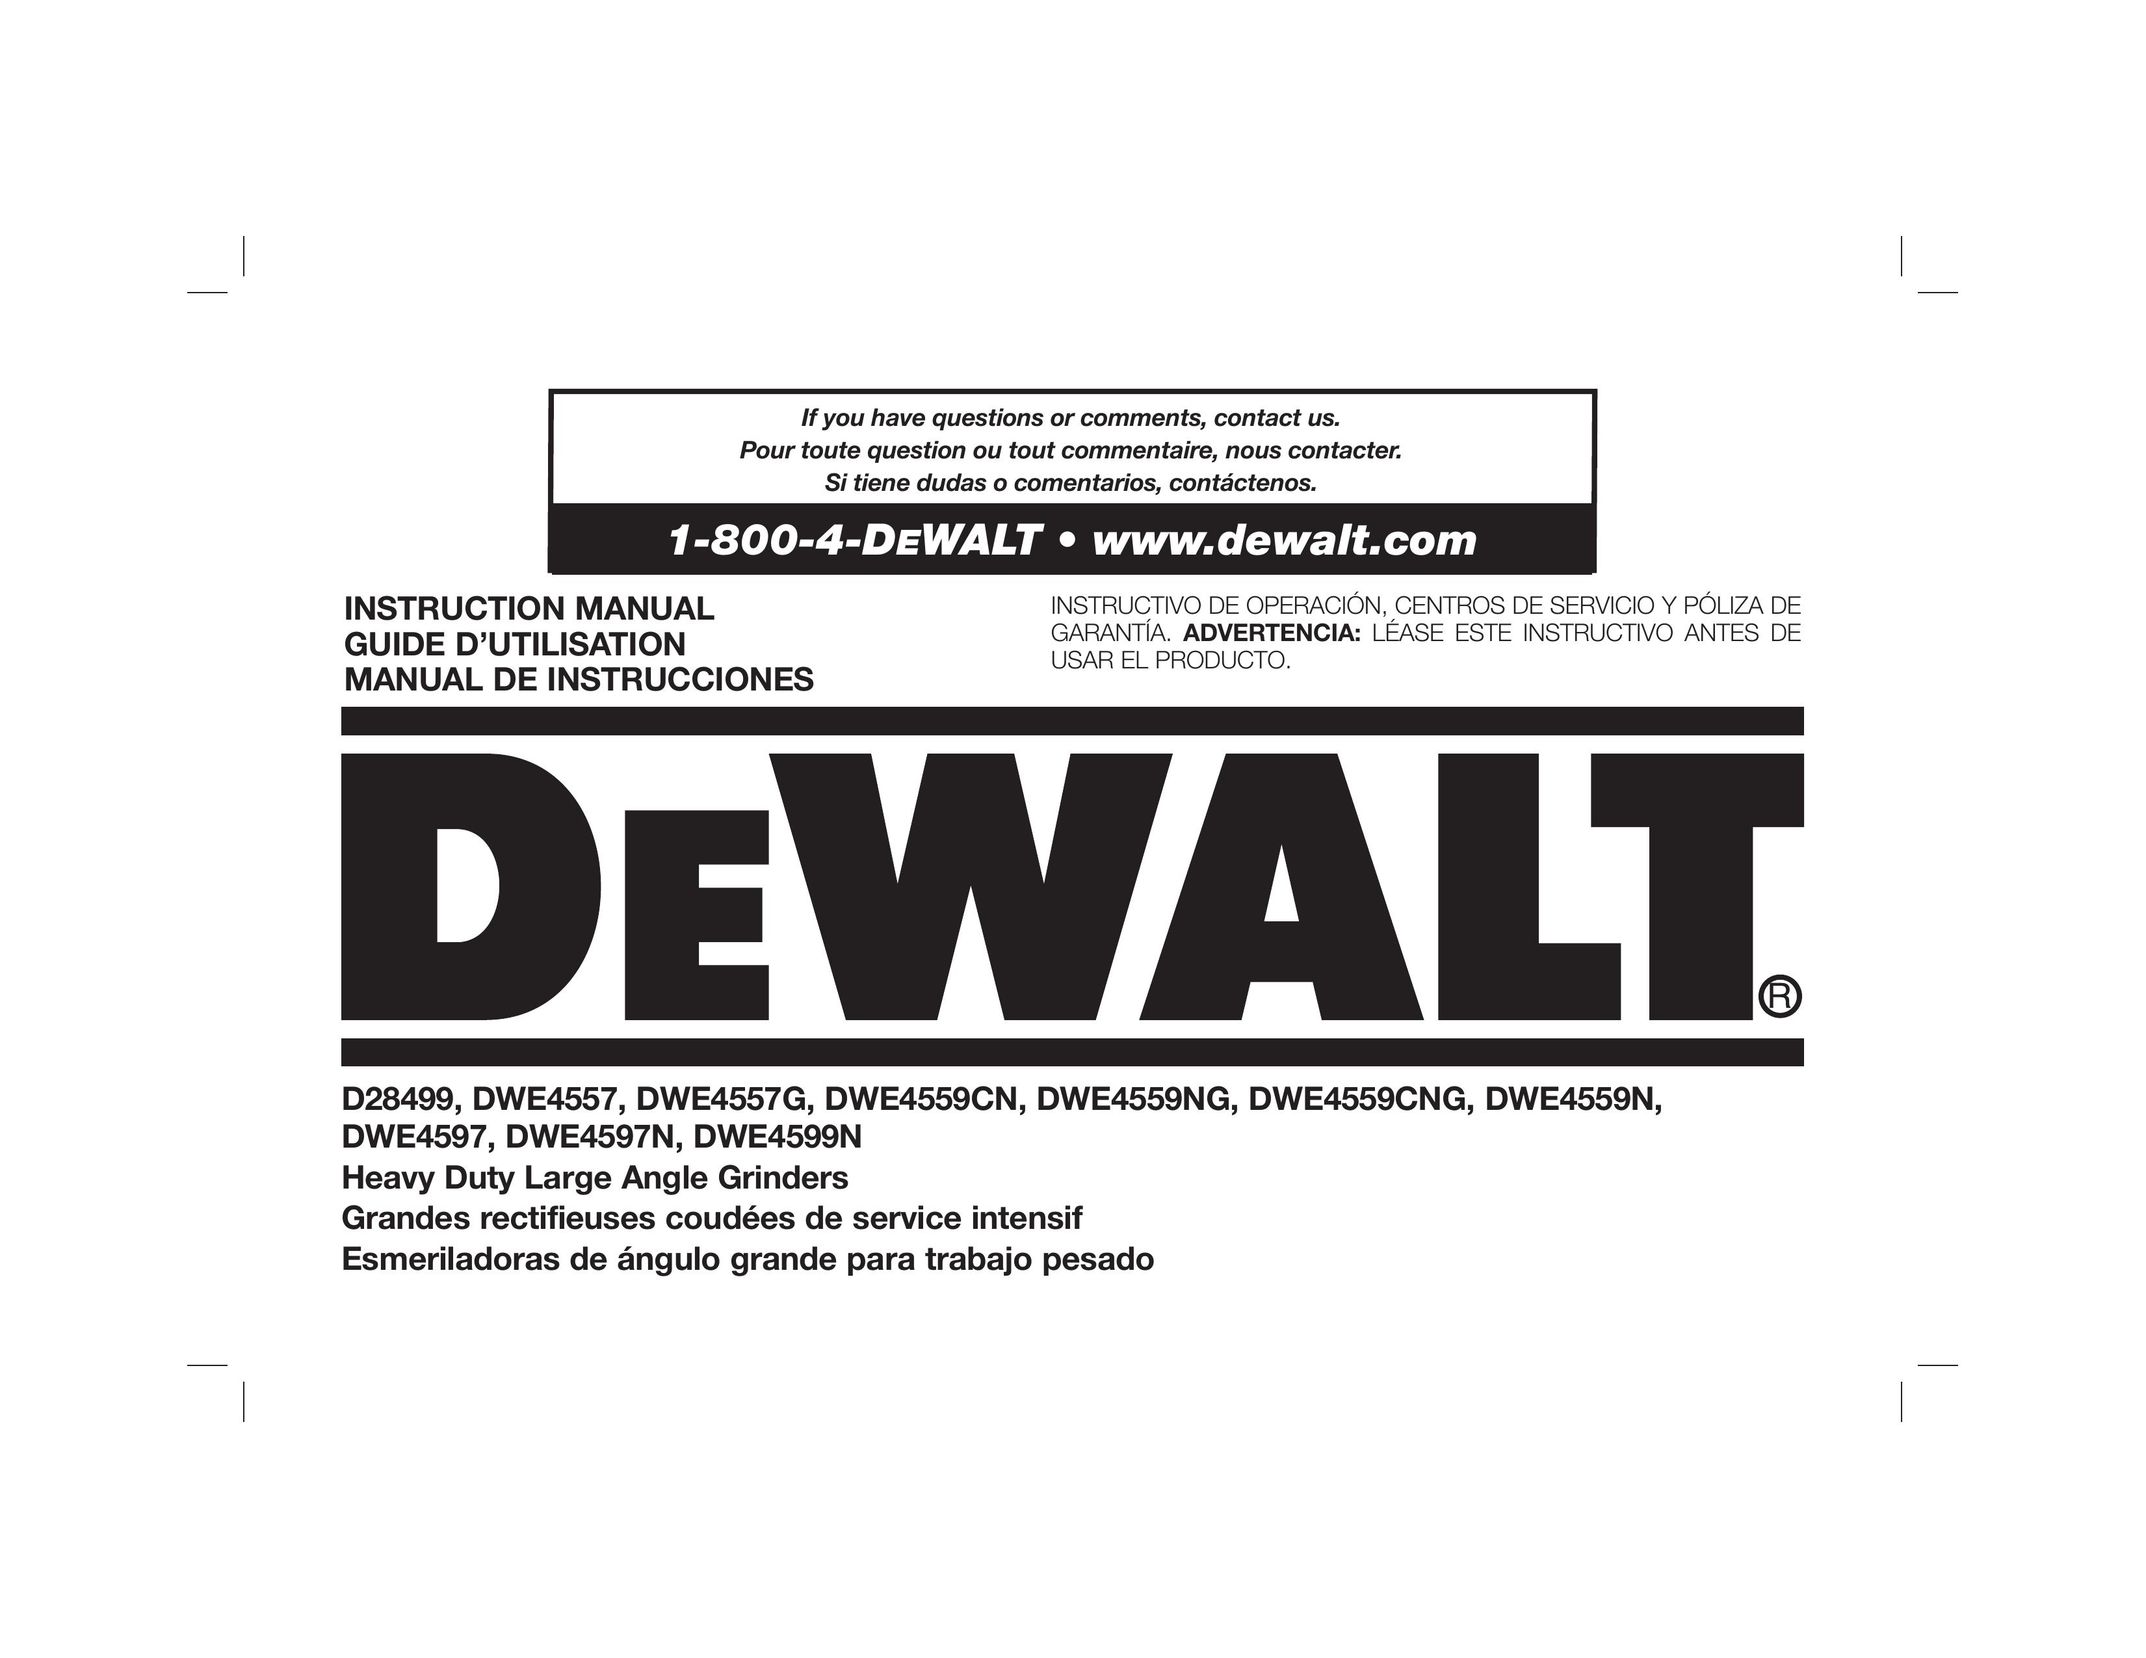 DeWalt DWE4557G Grinder User Manual